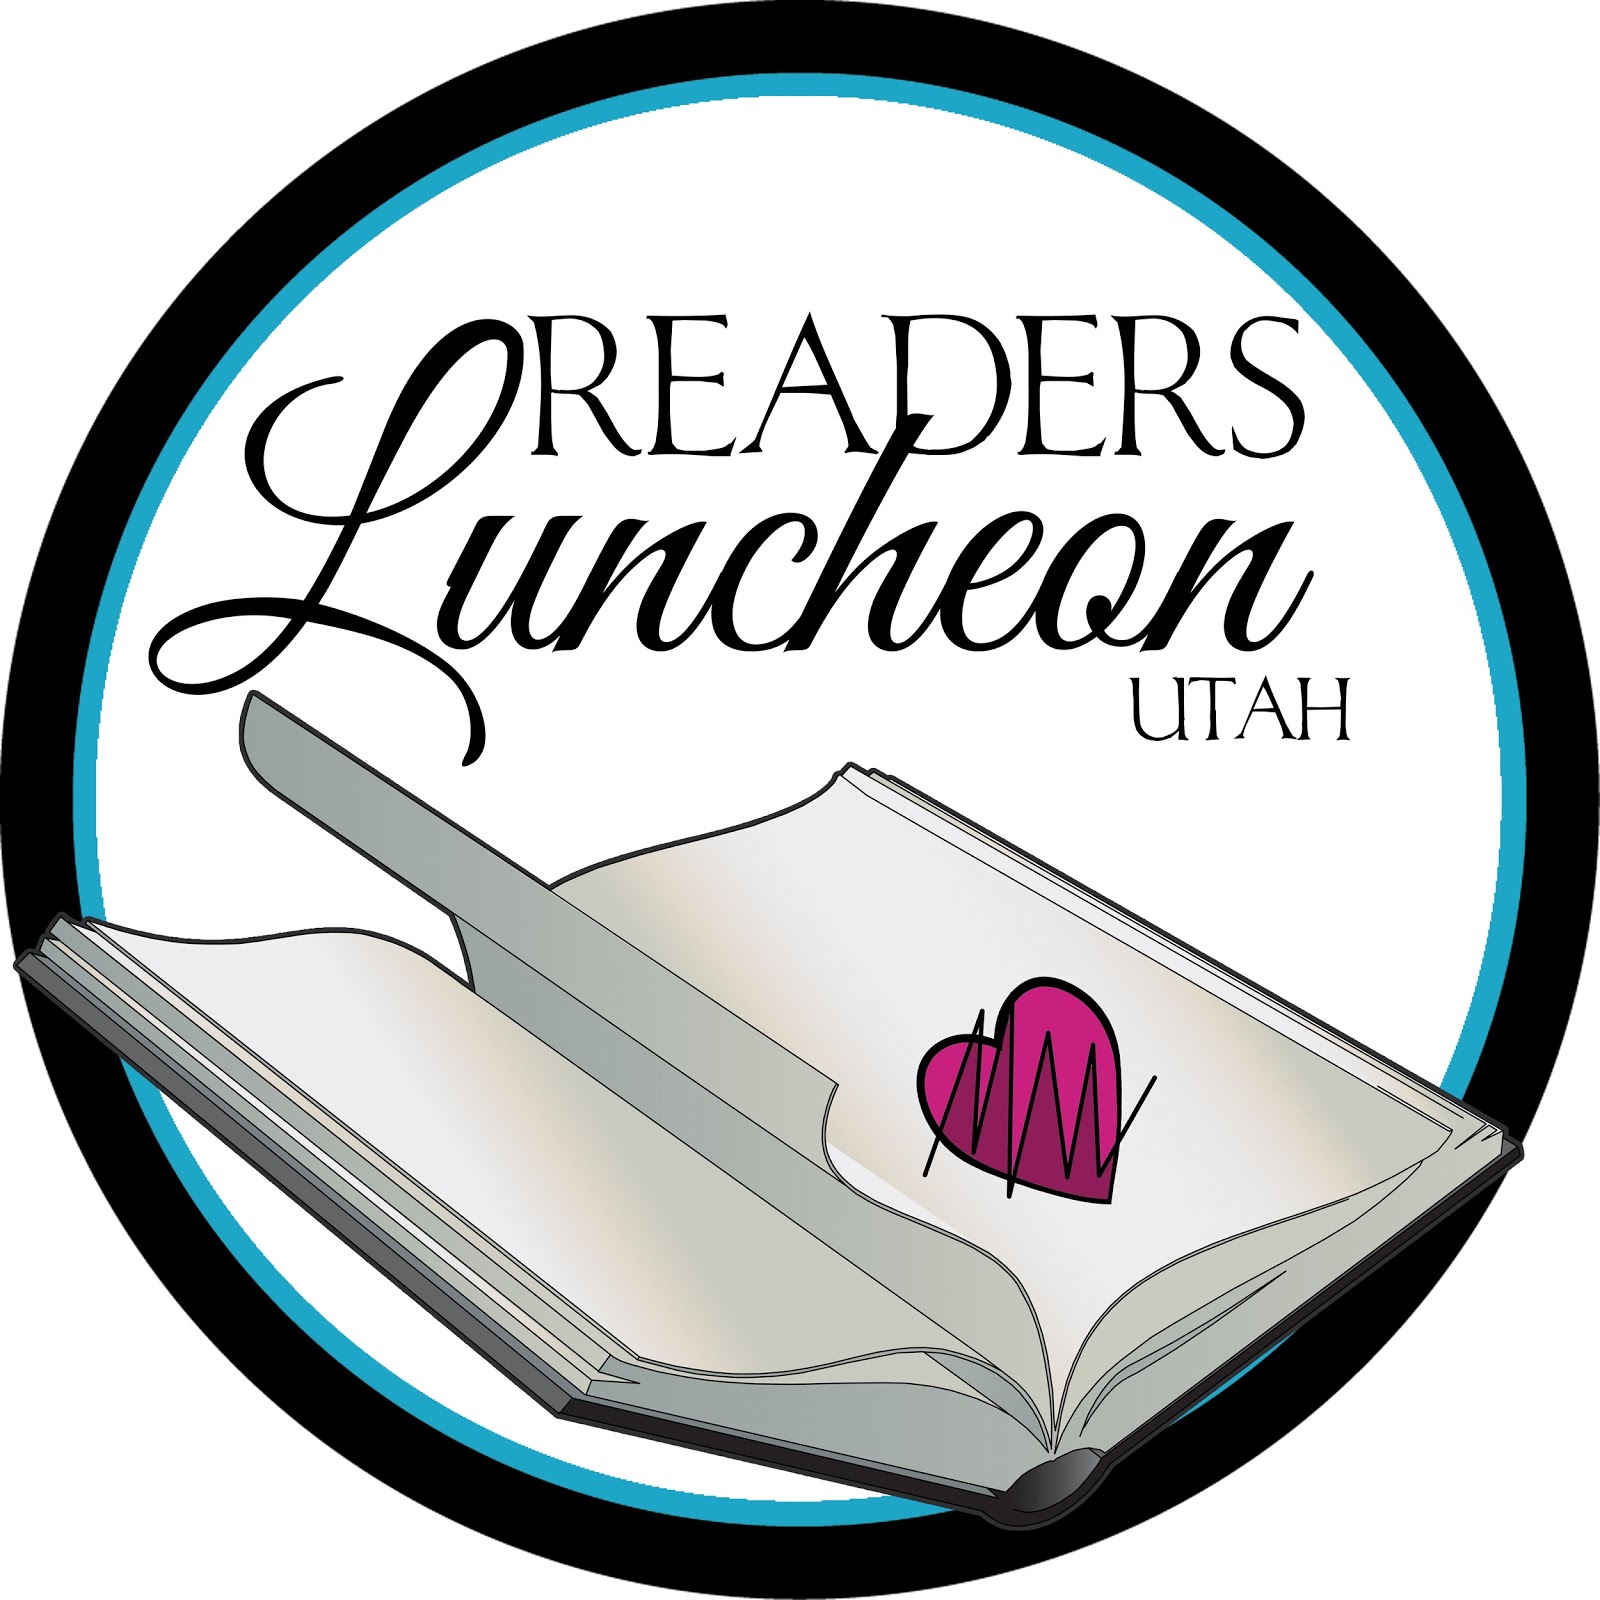 Readers Luncheon Utah